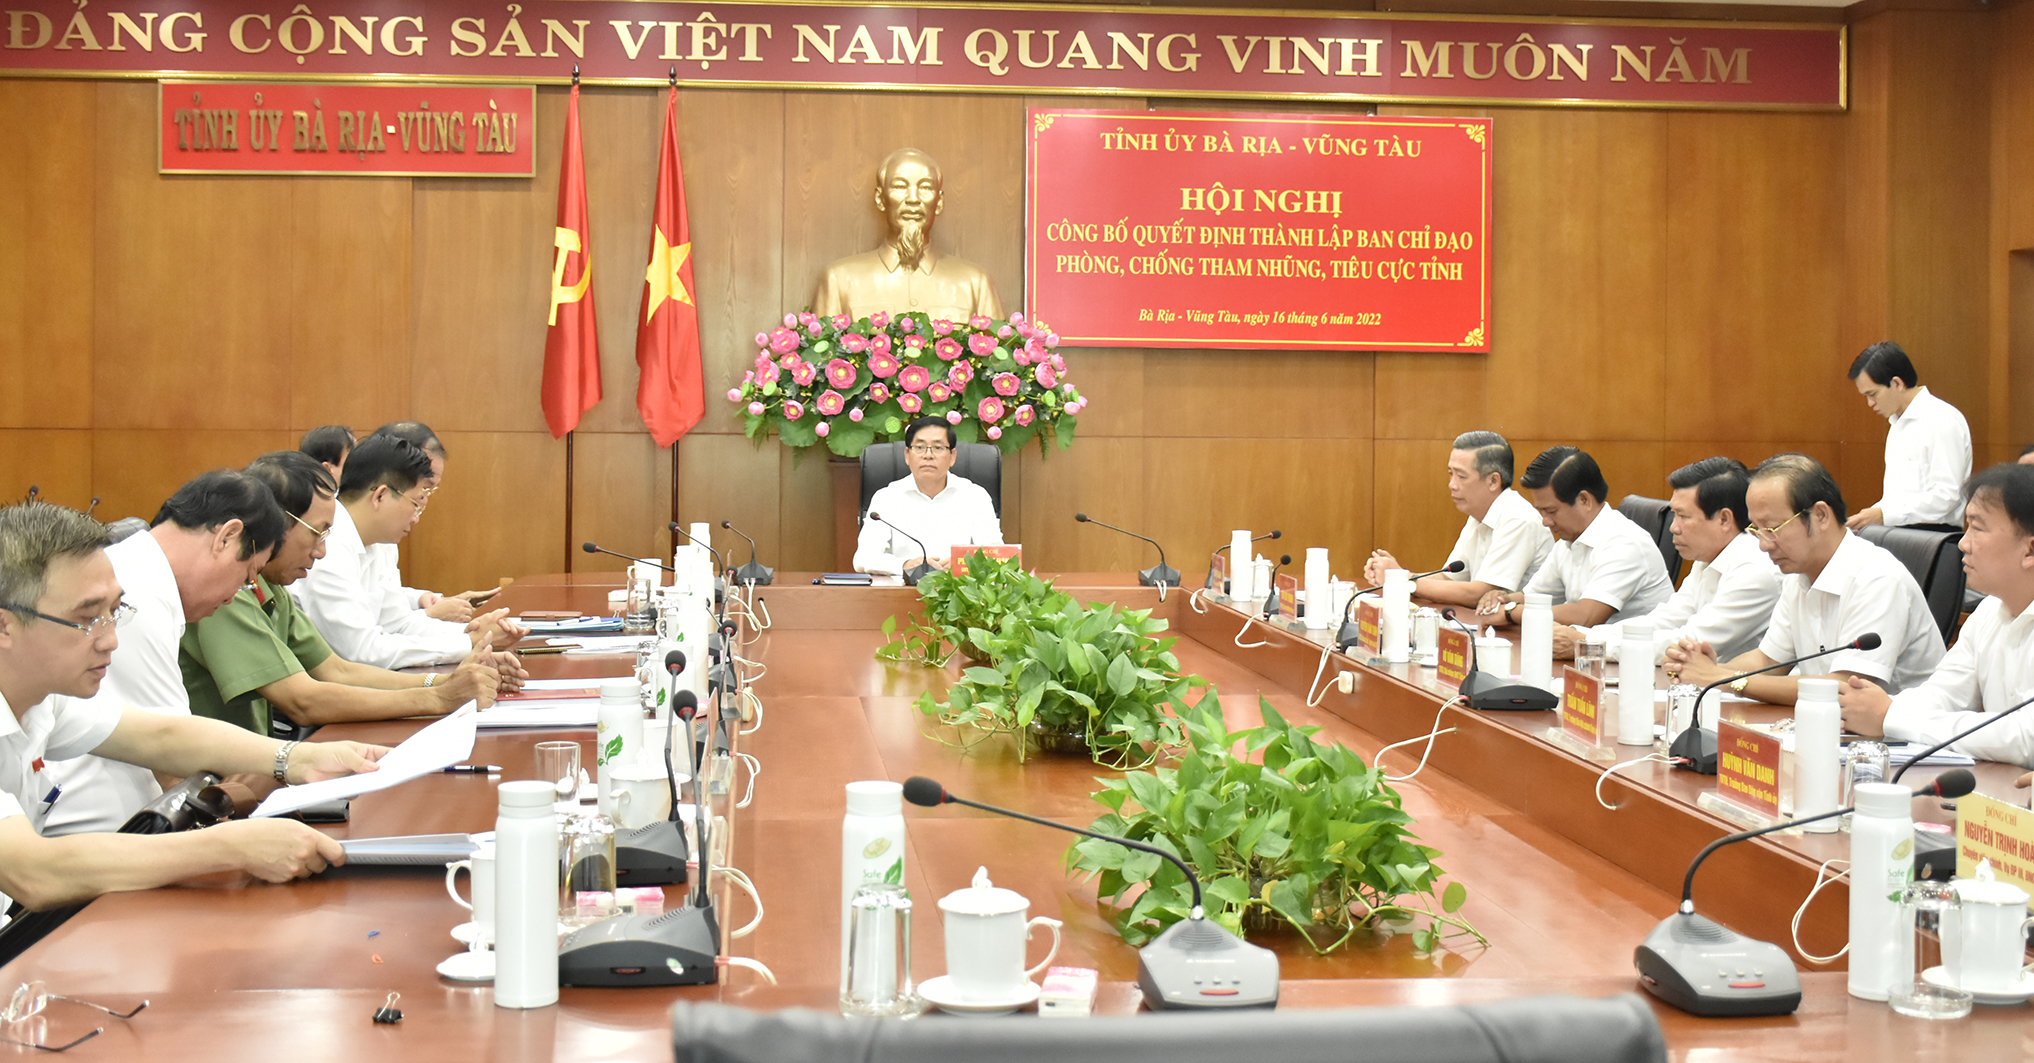 Hội nghị công bố quyết định thành lập BCĐ Phòng, chống tham nhũng, tiêu cực tỉnh Bà Rịa-Vũng Tàu.